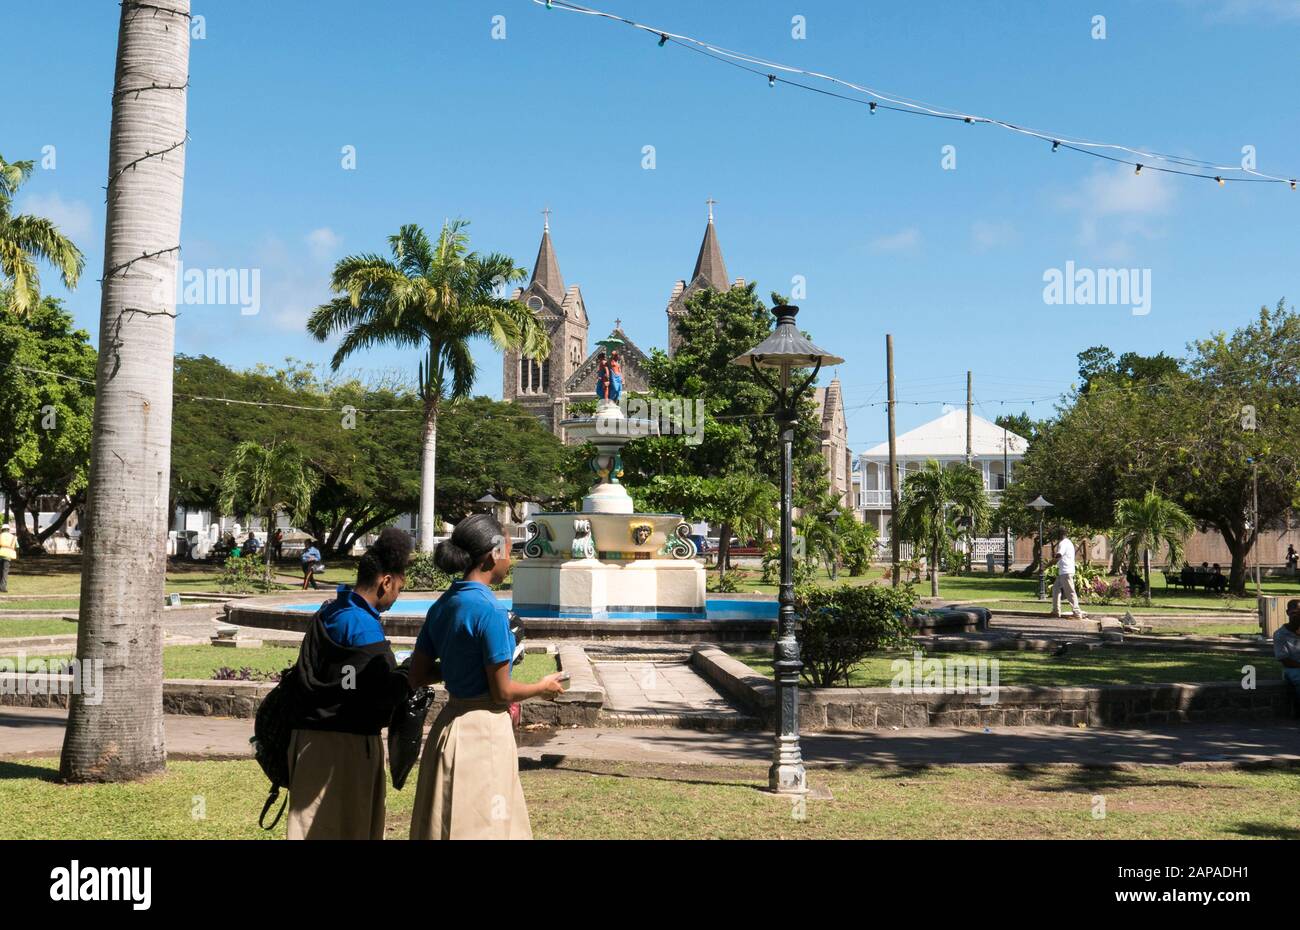 Jardins et fontaines de la place de l'indépendance à St.Kitts dans les Caraïbes Banque D'Images